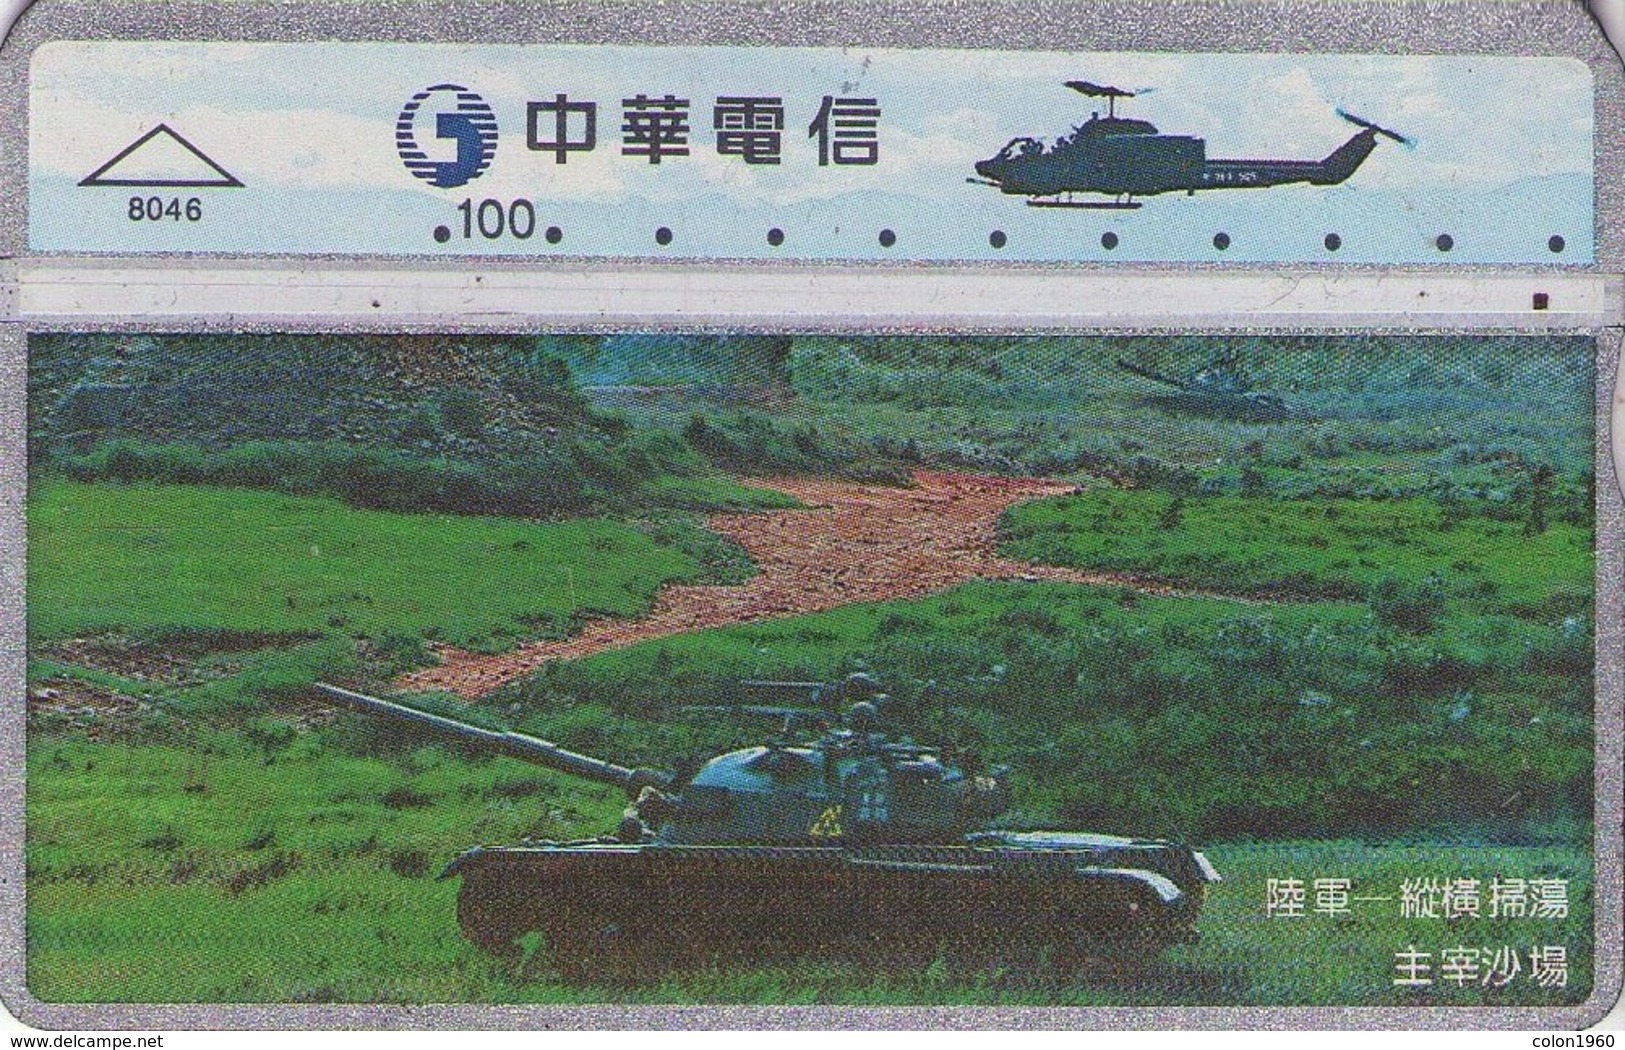 TAIWAN. 840K. ARMY - TANK. 8046. (119) - Army